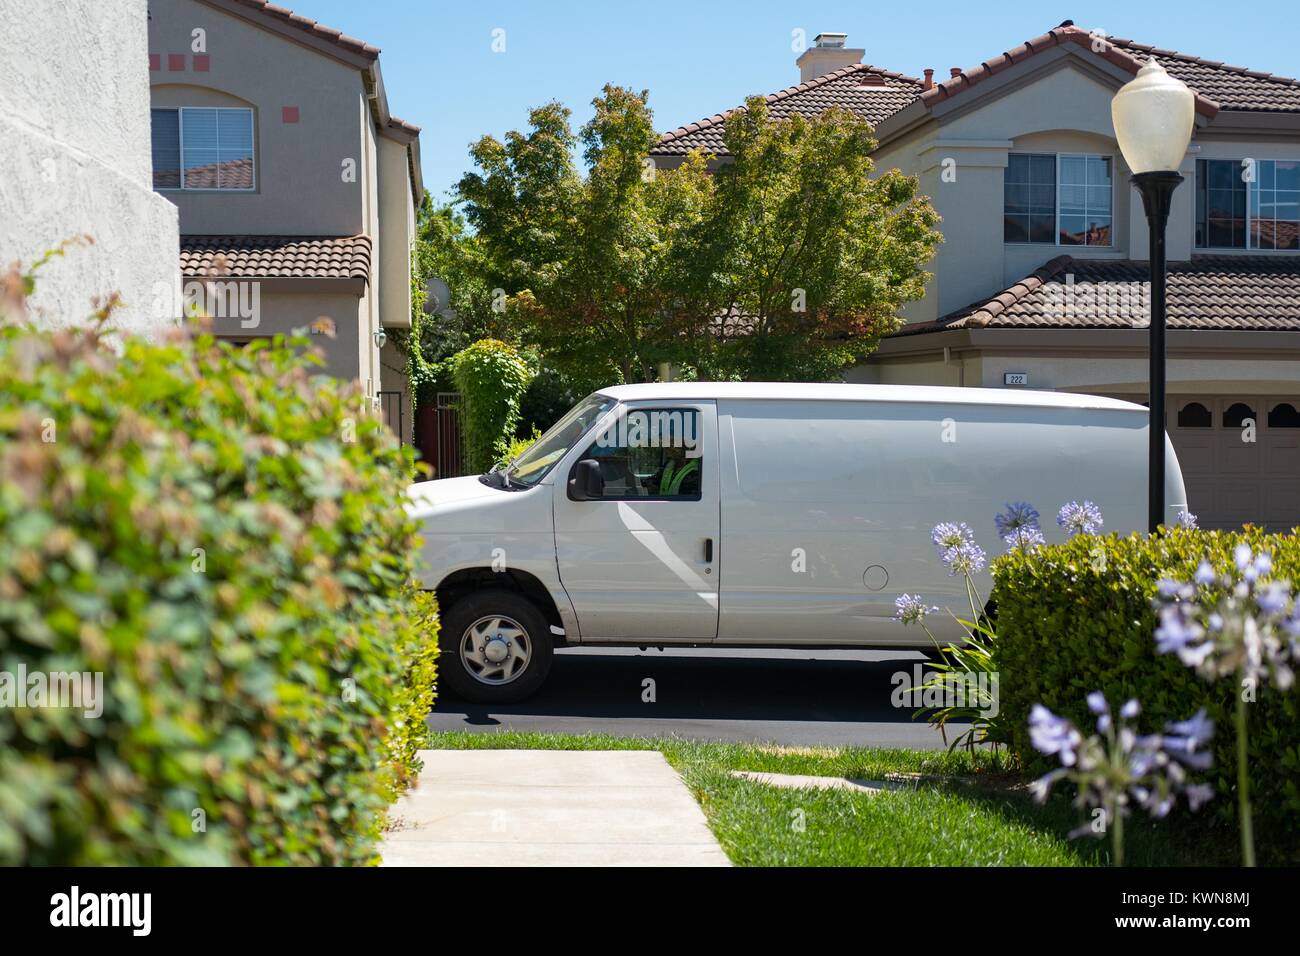 Une camionnette blanche pour un tiers entrepreneur livraison Amazon.com  s'arrête en face d'une maison de banlieue dans la région de la baie de San  Francisco la ville de San Ramon, Californie pour